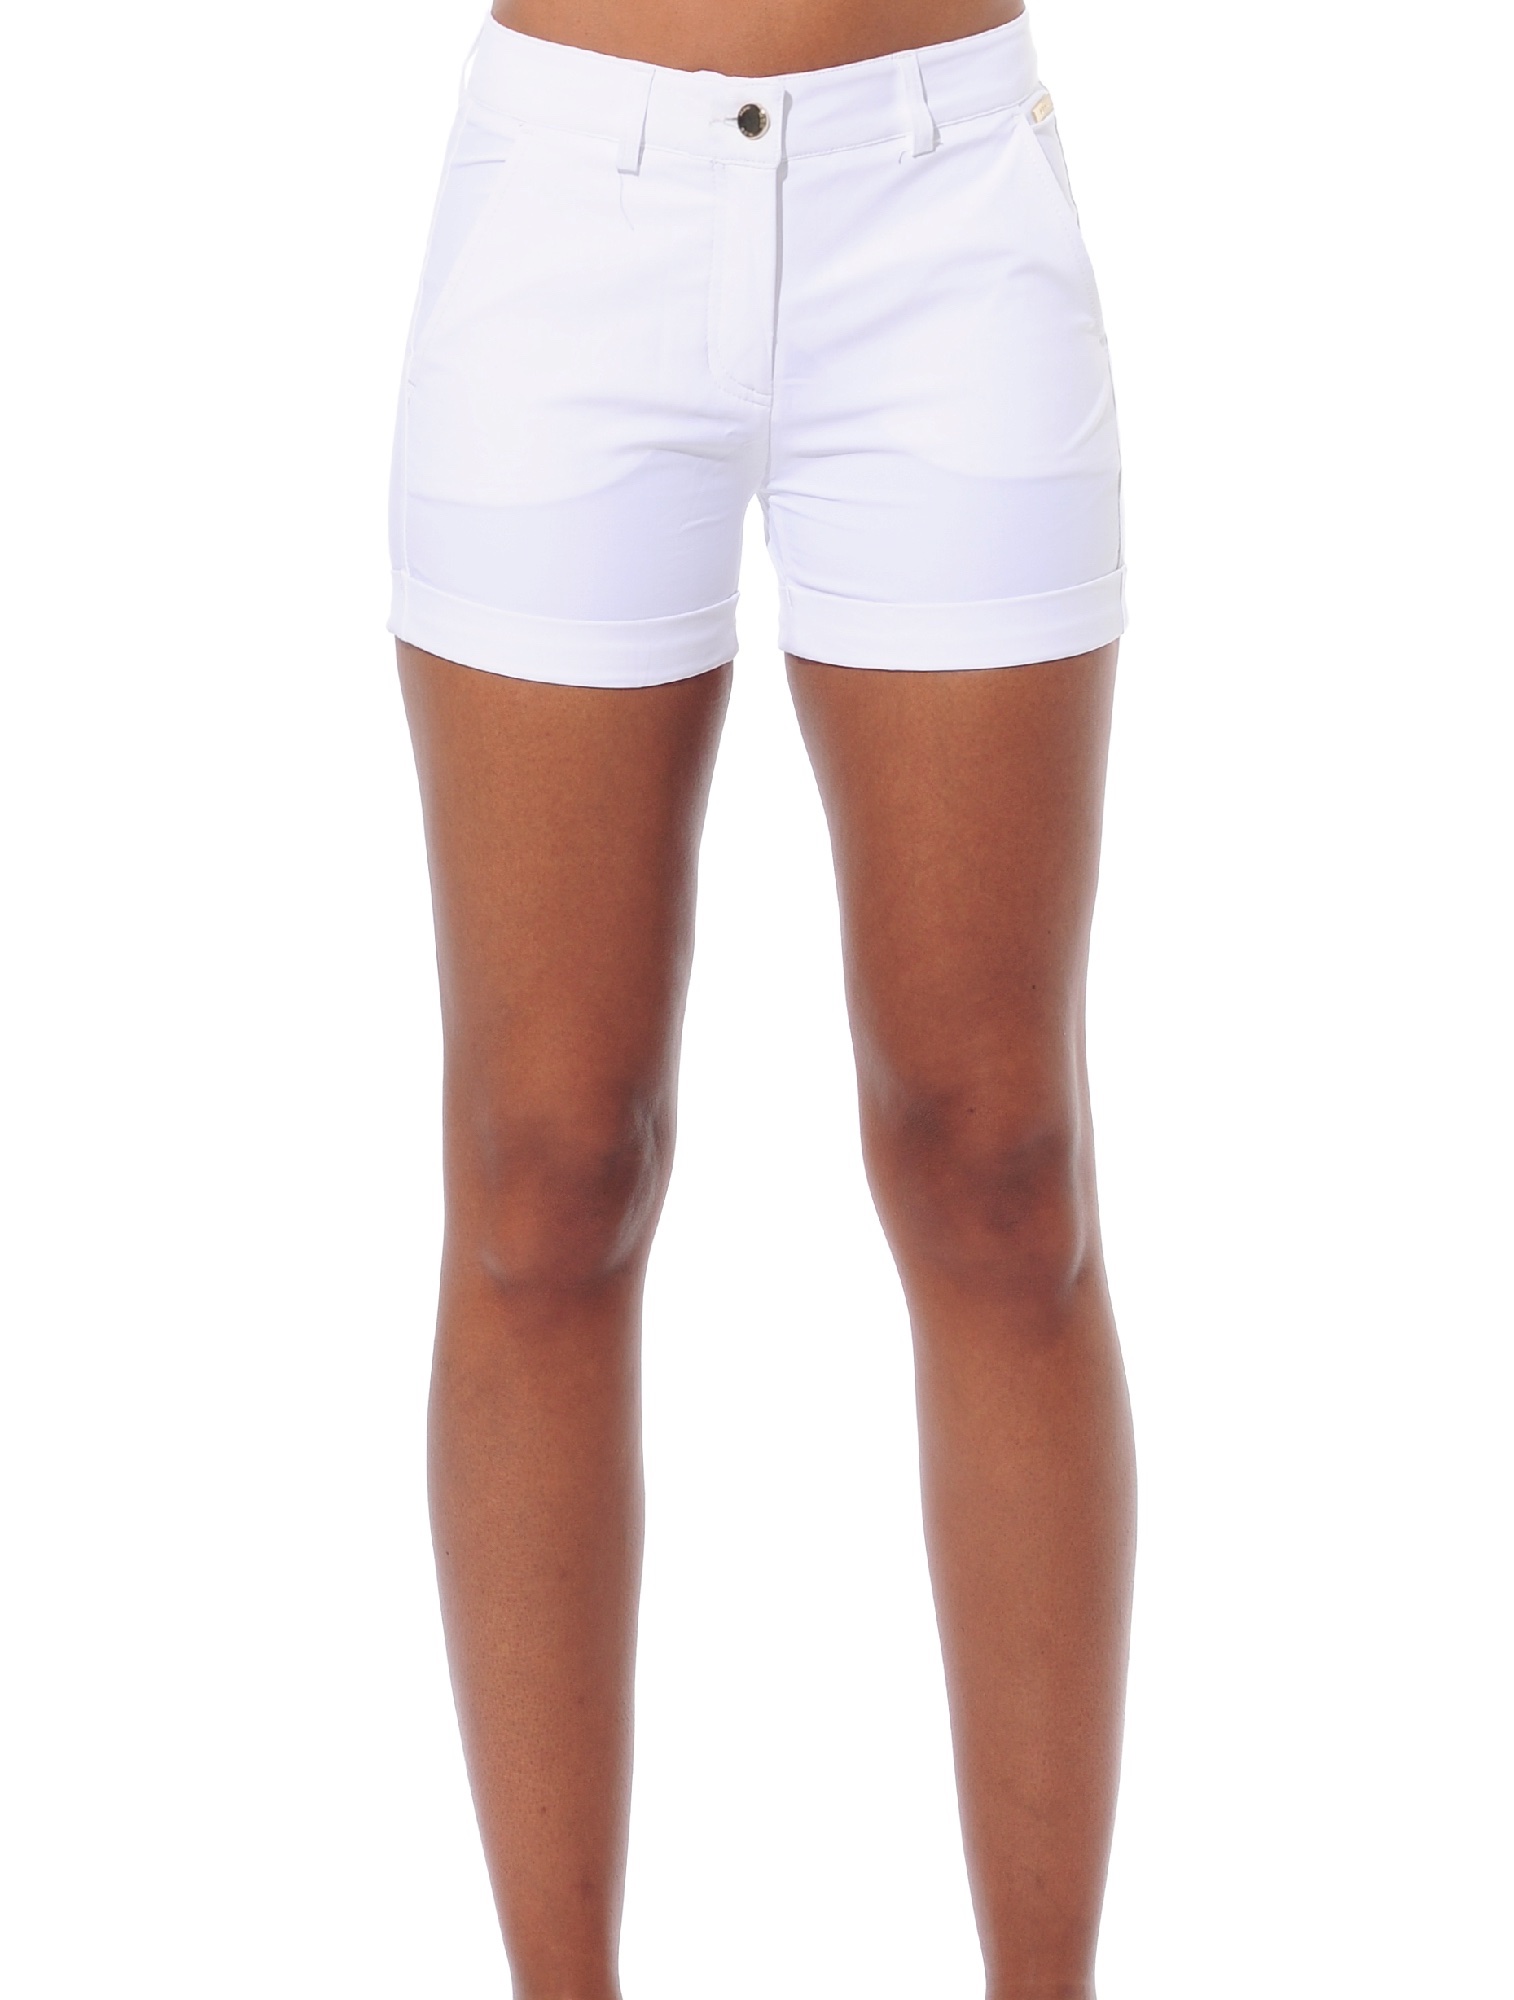 4way Stretch Shorts white